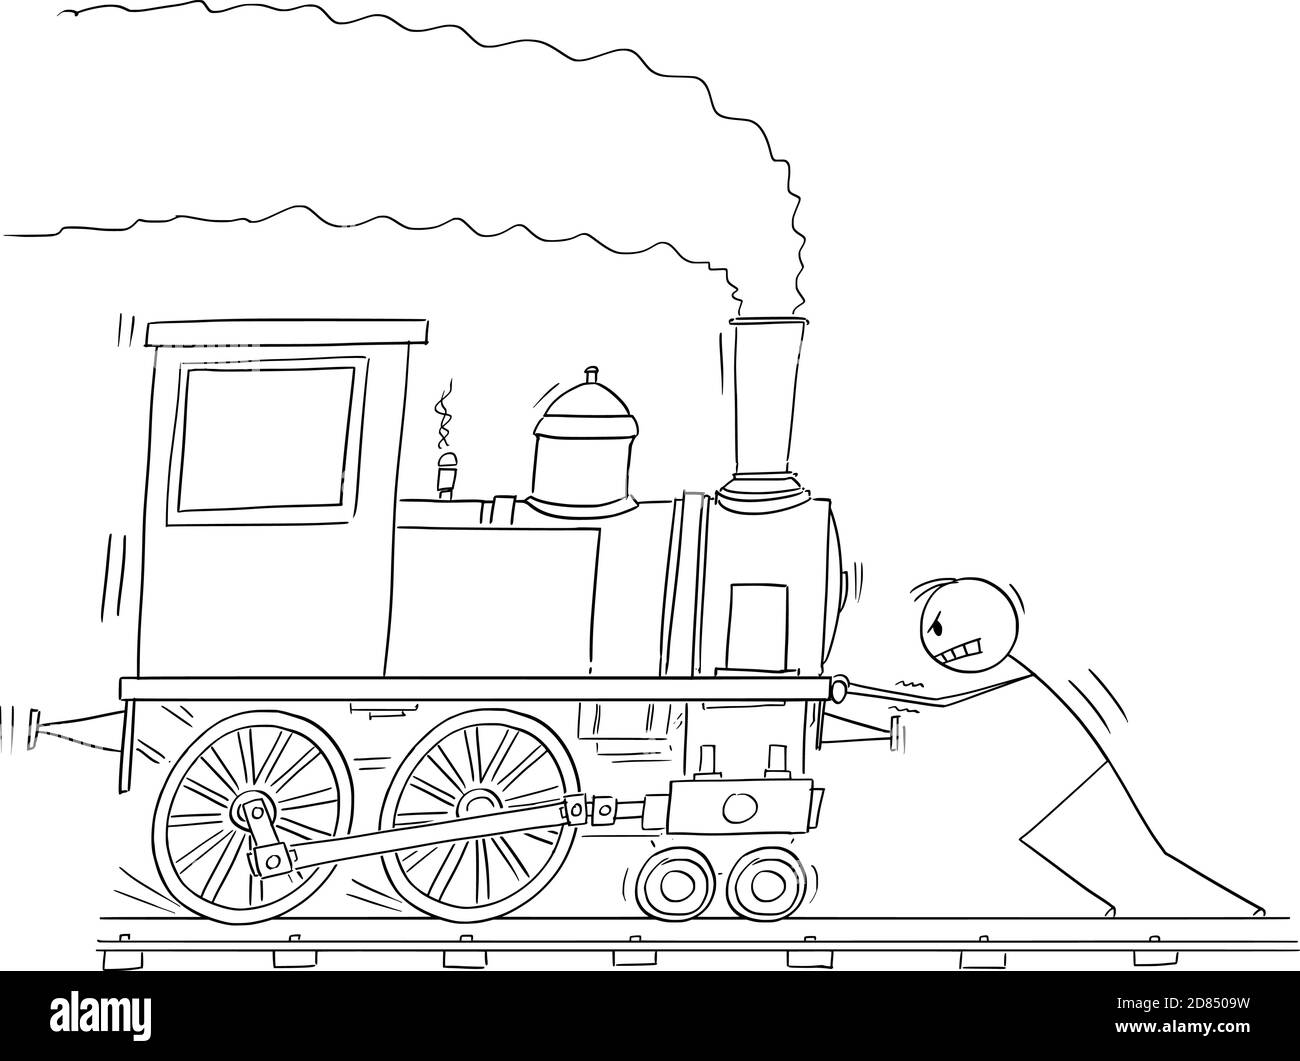 Dessin-modèle vectoriel de bâton illustration de l'homme poussant le moteur ou la locomotive de train à vapeur. Illustration de Vecteur